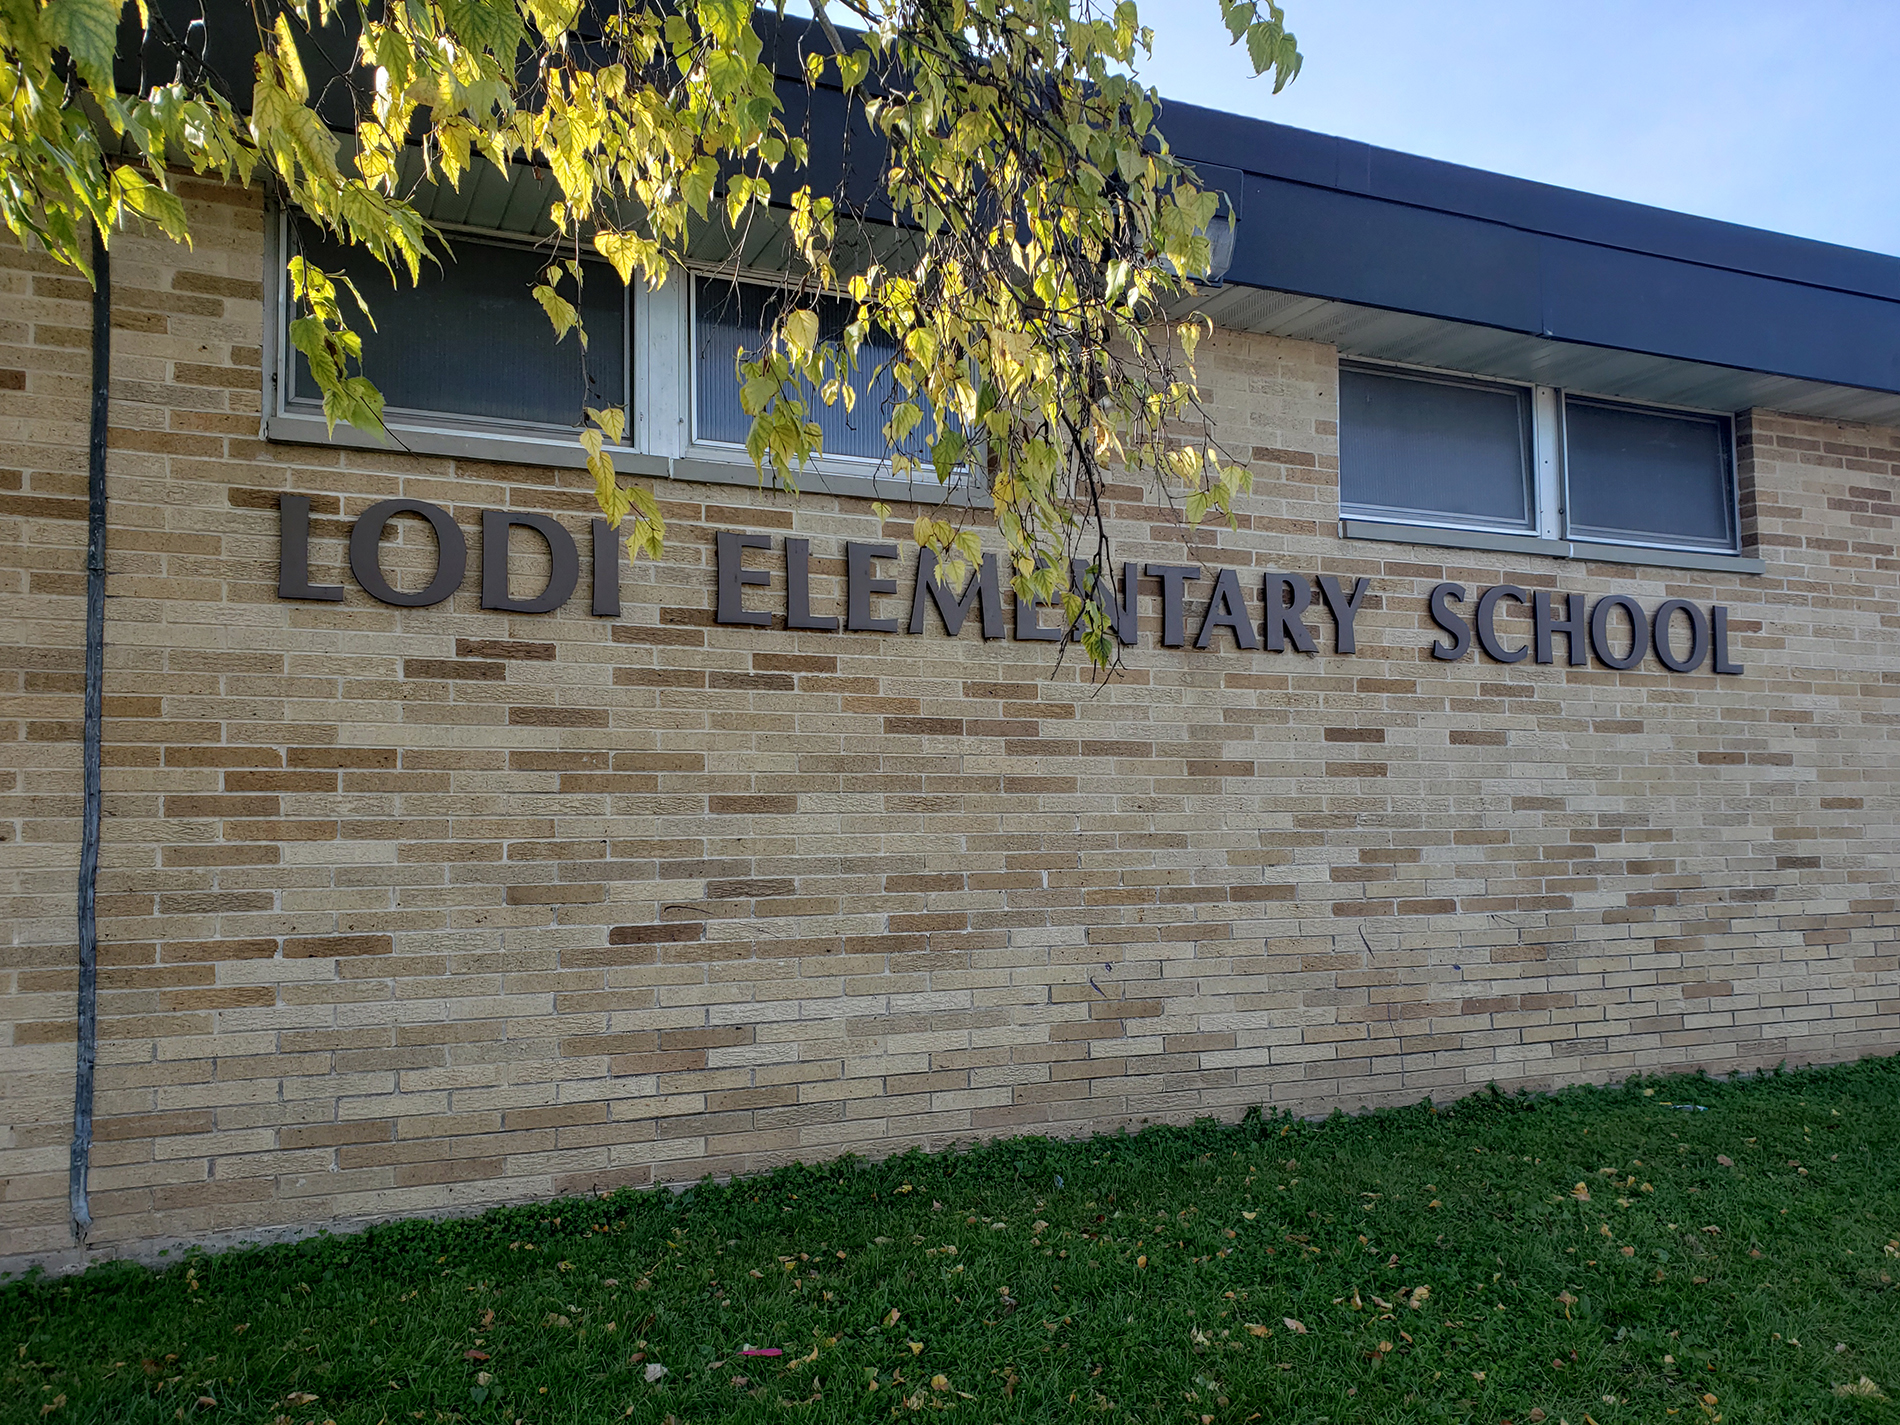 Lodi Elementary School